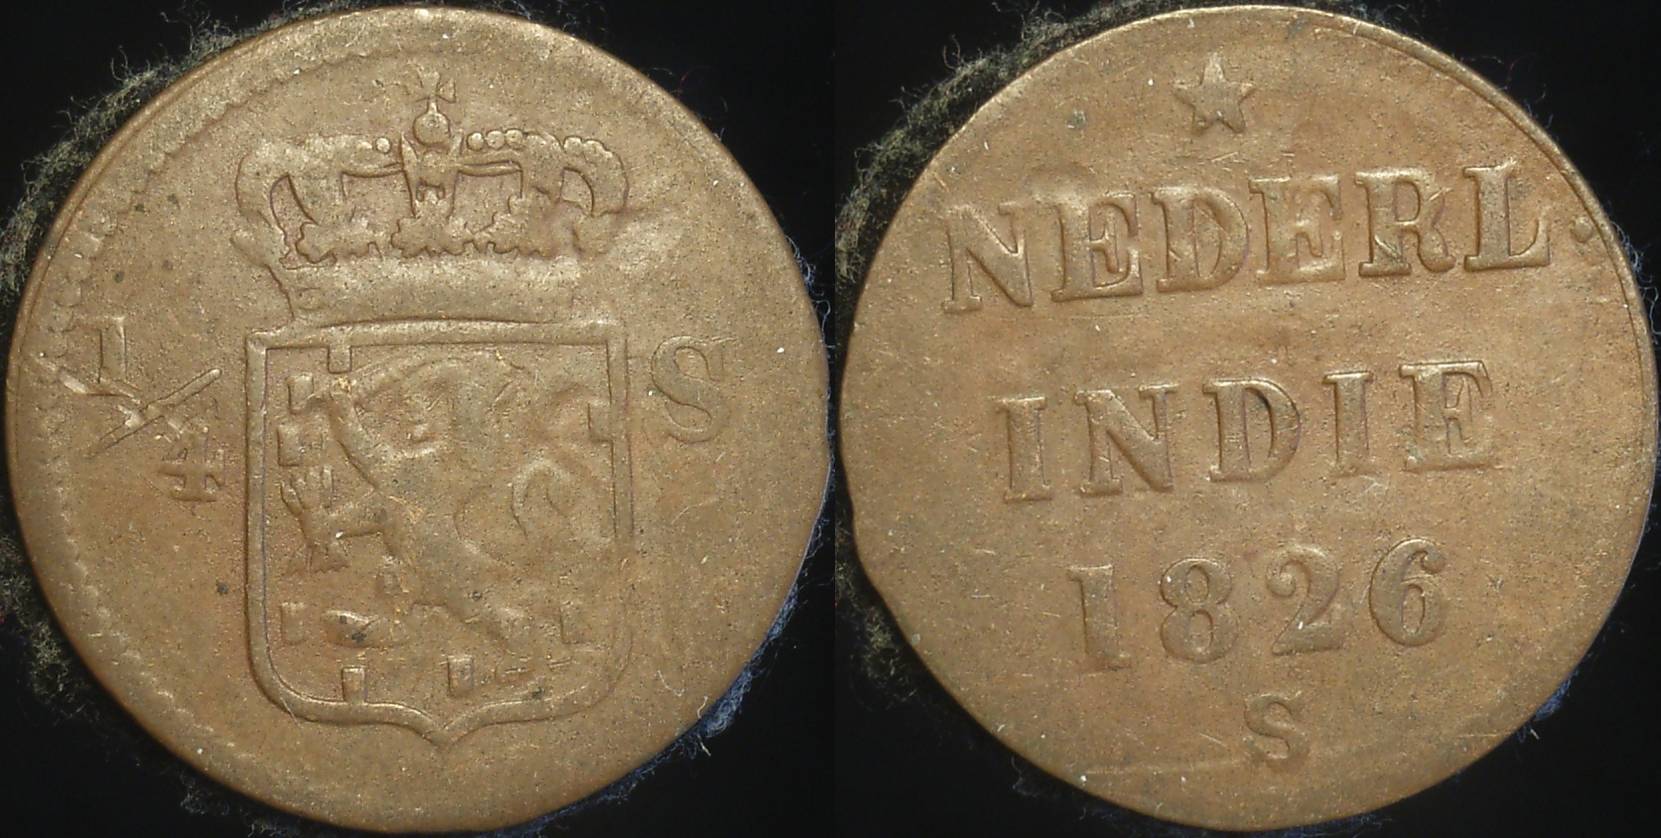 Netherlands East Indies 1826 1/4 Stuiver F